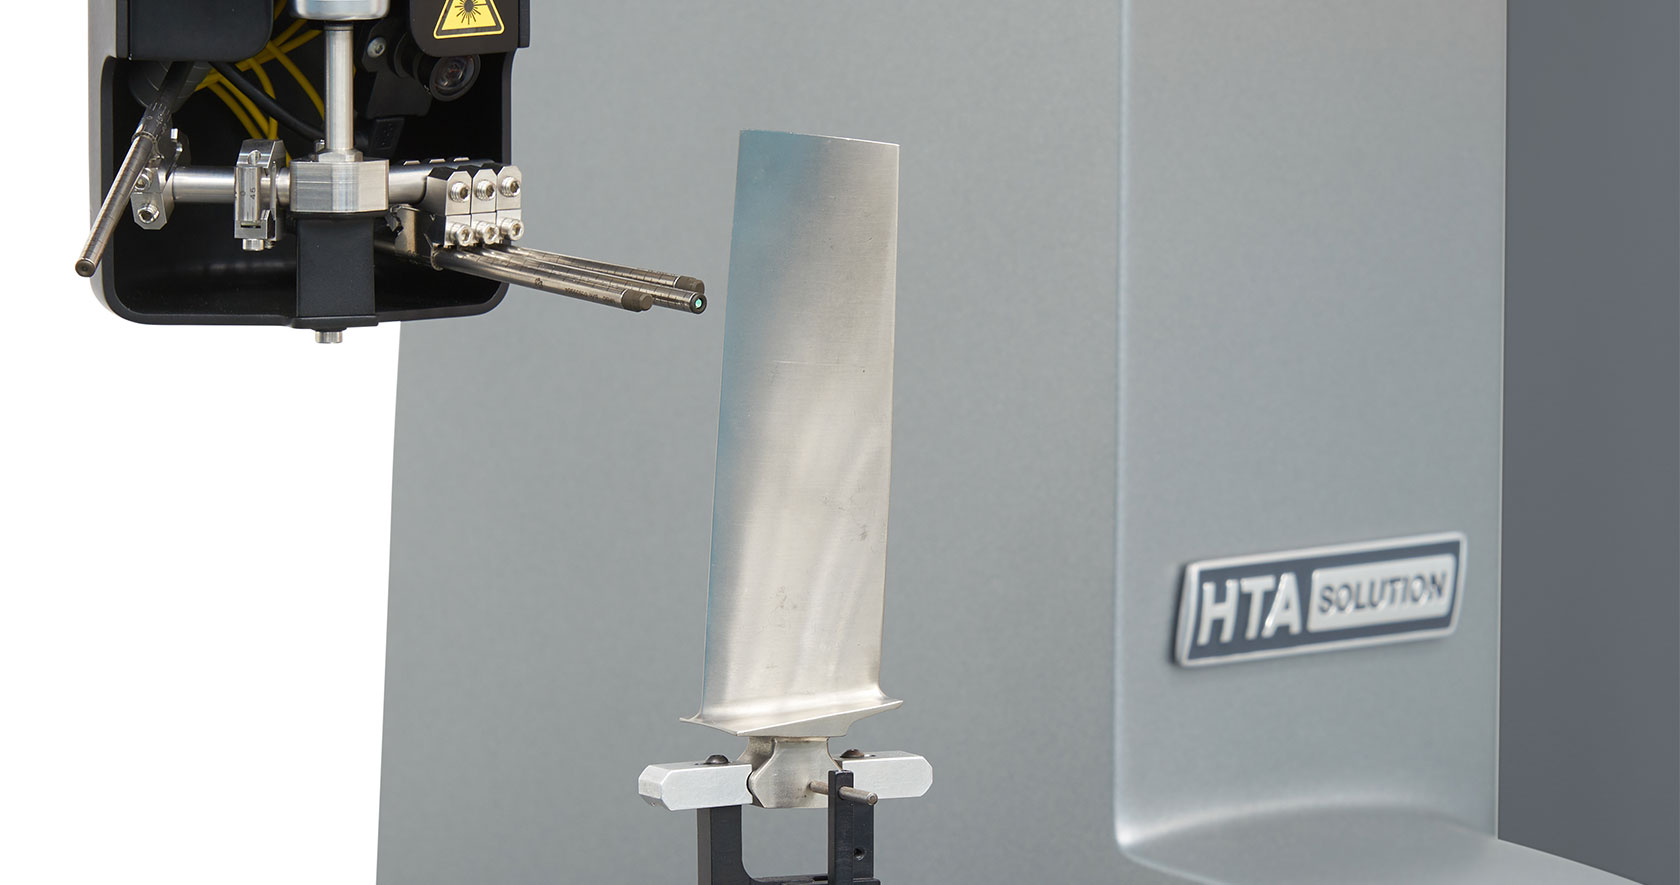 В процессах контроля турбинных лопаток GLOBAL S HTA обеспечивает скорость и точность, ожидаемые от продуктов Hexagon Manufacturing Intelligence